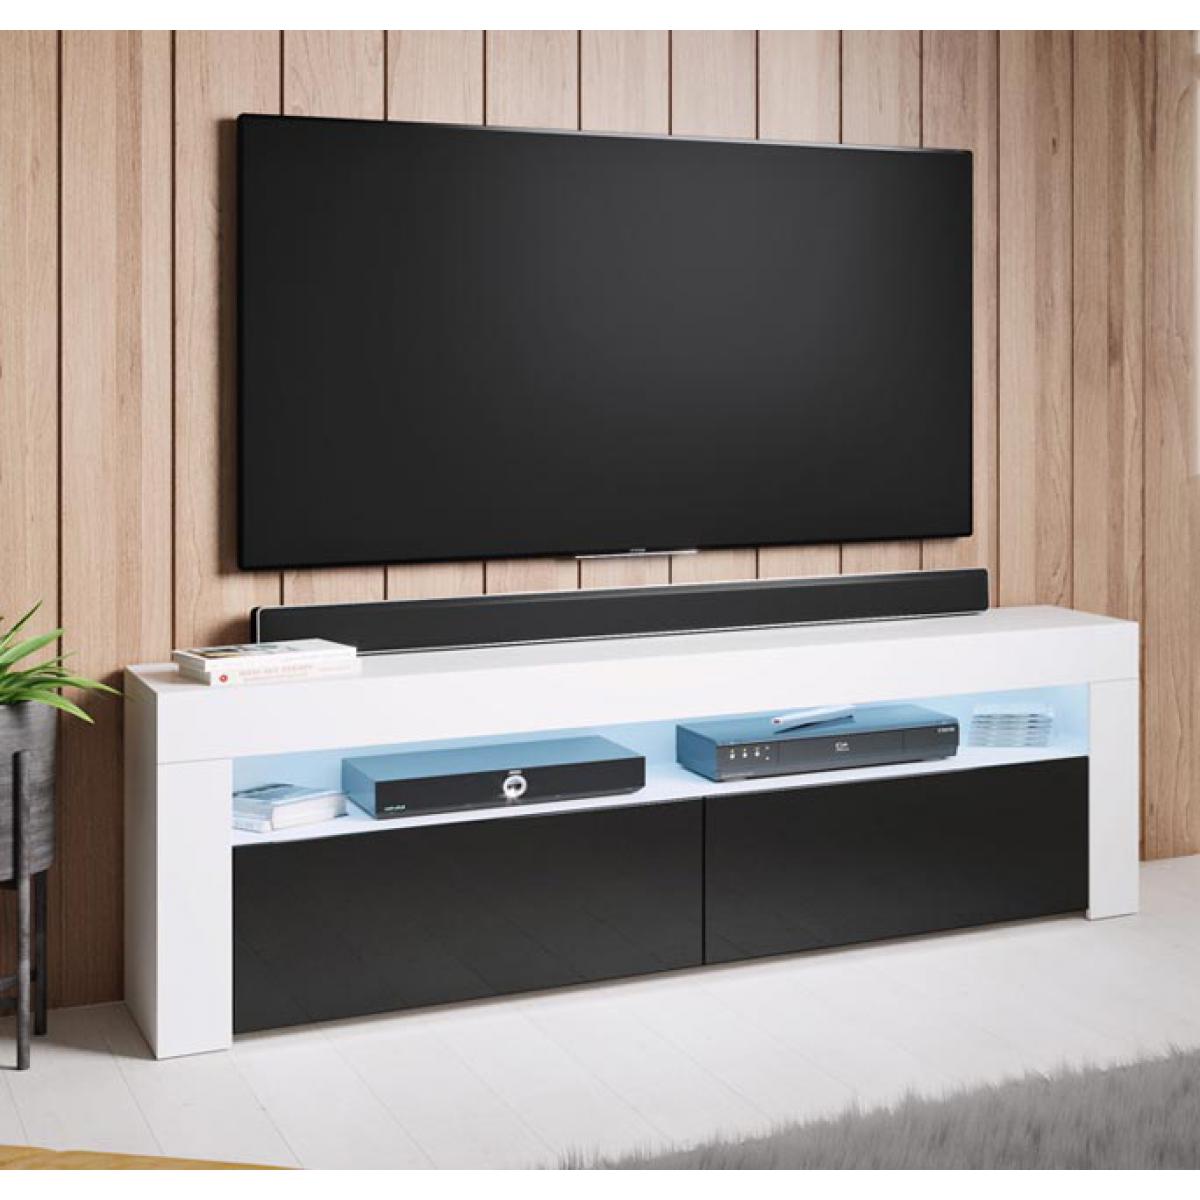 Design Ameublement - Meuble TV modèle Aker (140x50,5cm) couleur blanc et noir - Meubles TV, Hi-Fi